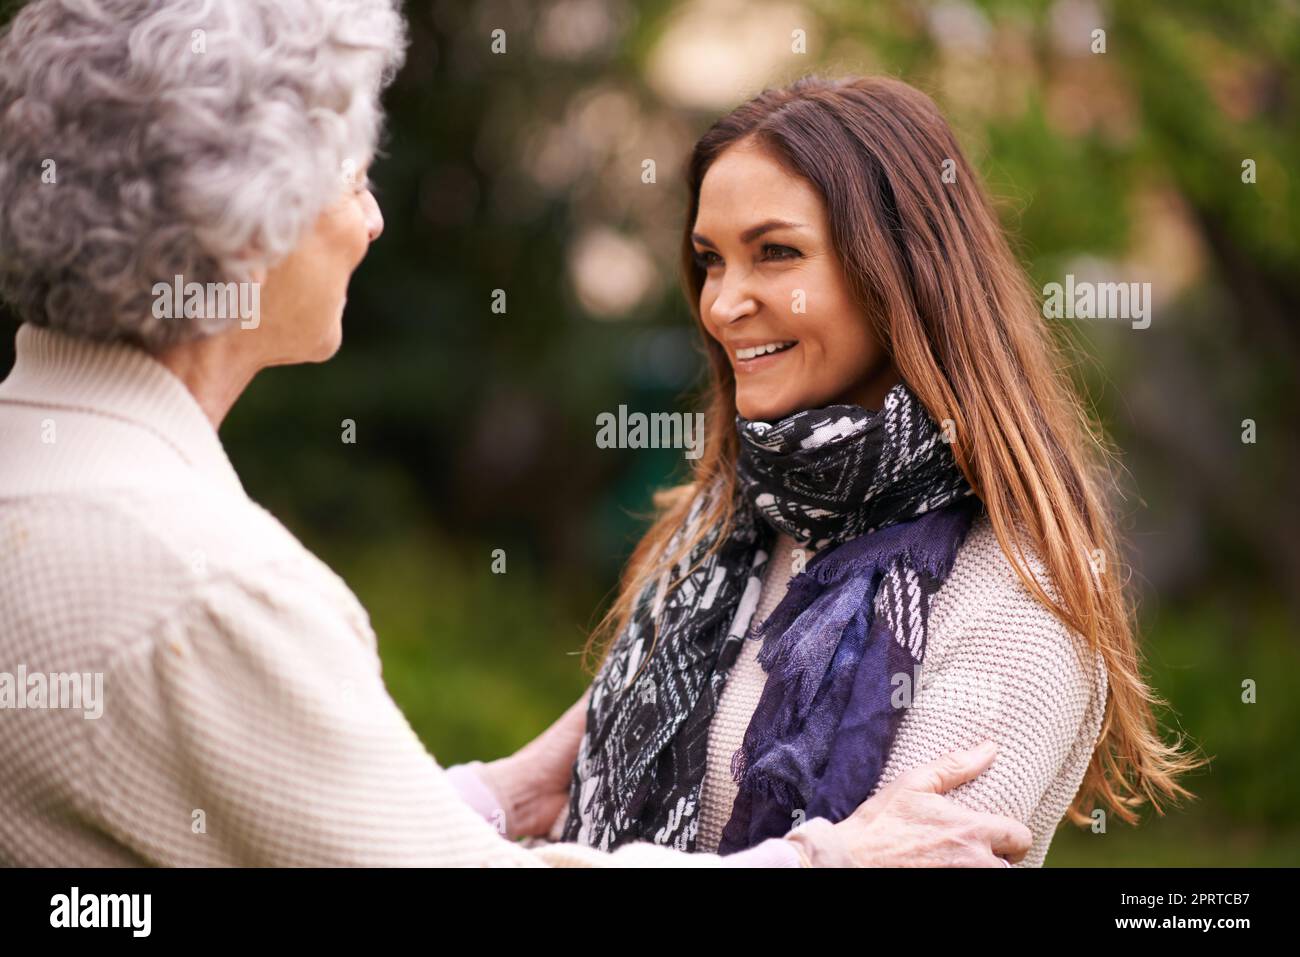 Si bonne de vous voir, maman. Une femme attrayante passant du temps avec sa mère à l'extérieur Banque D'Images